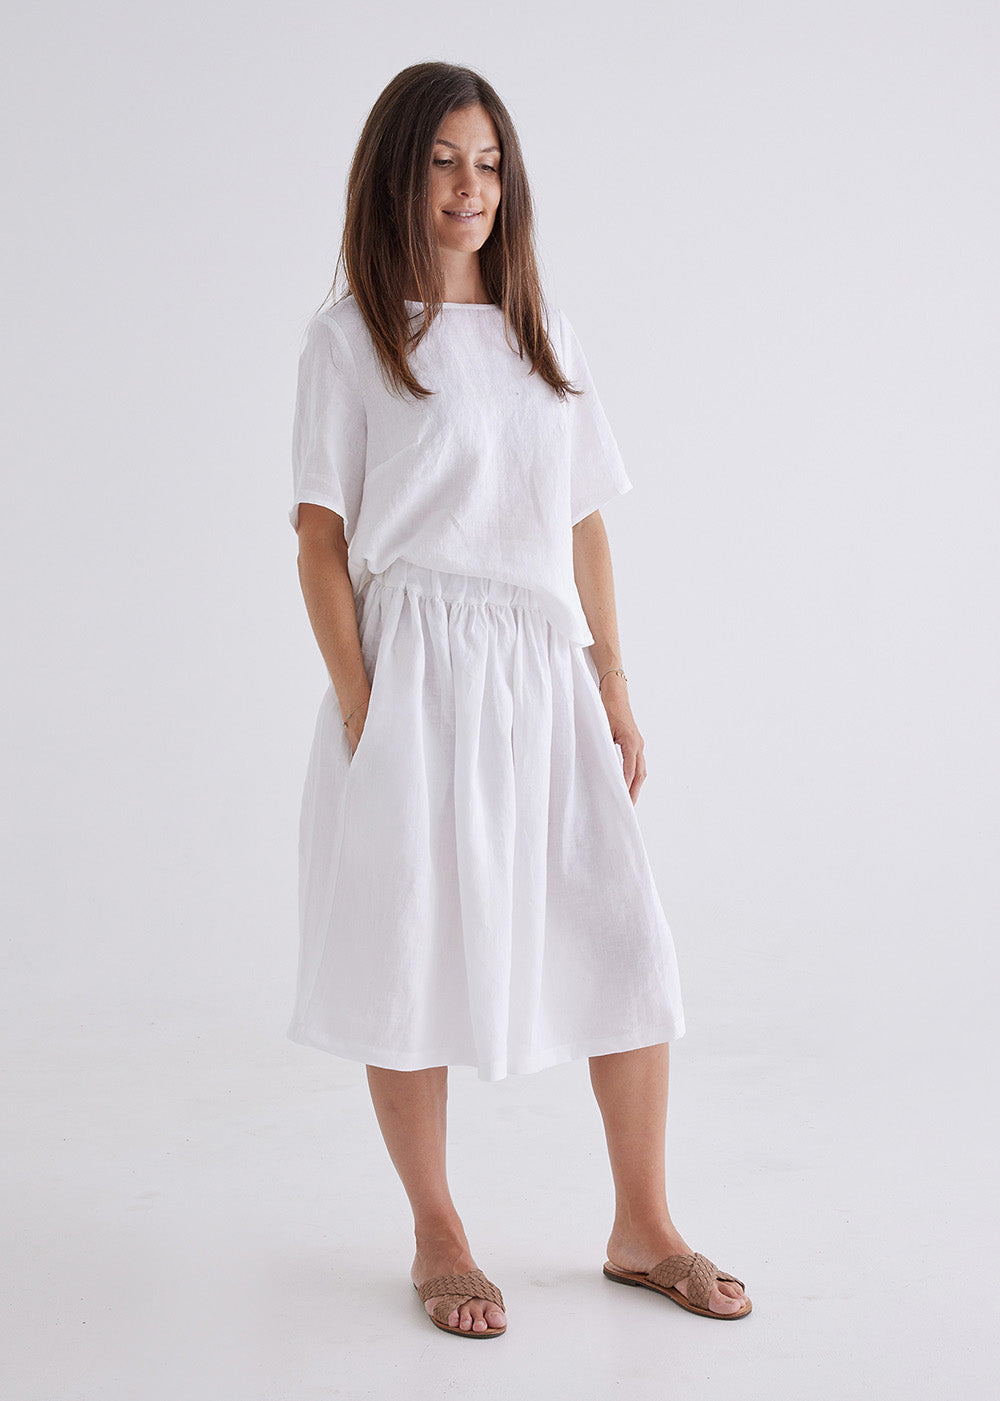 linen skirts for women made in australia#colour_white